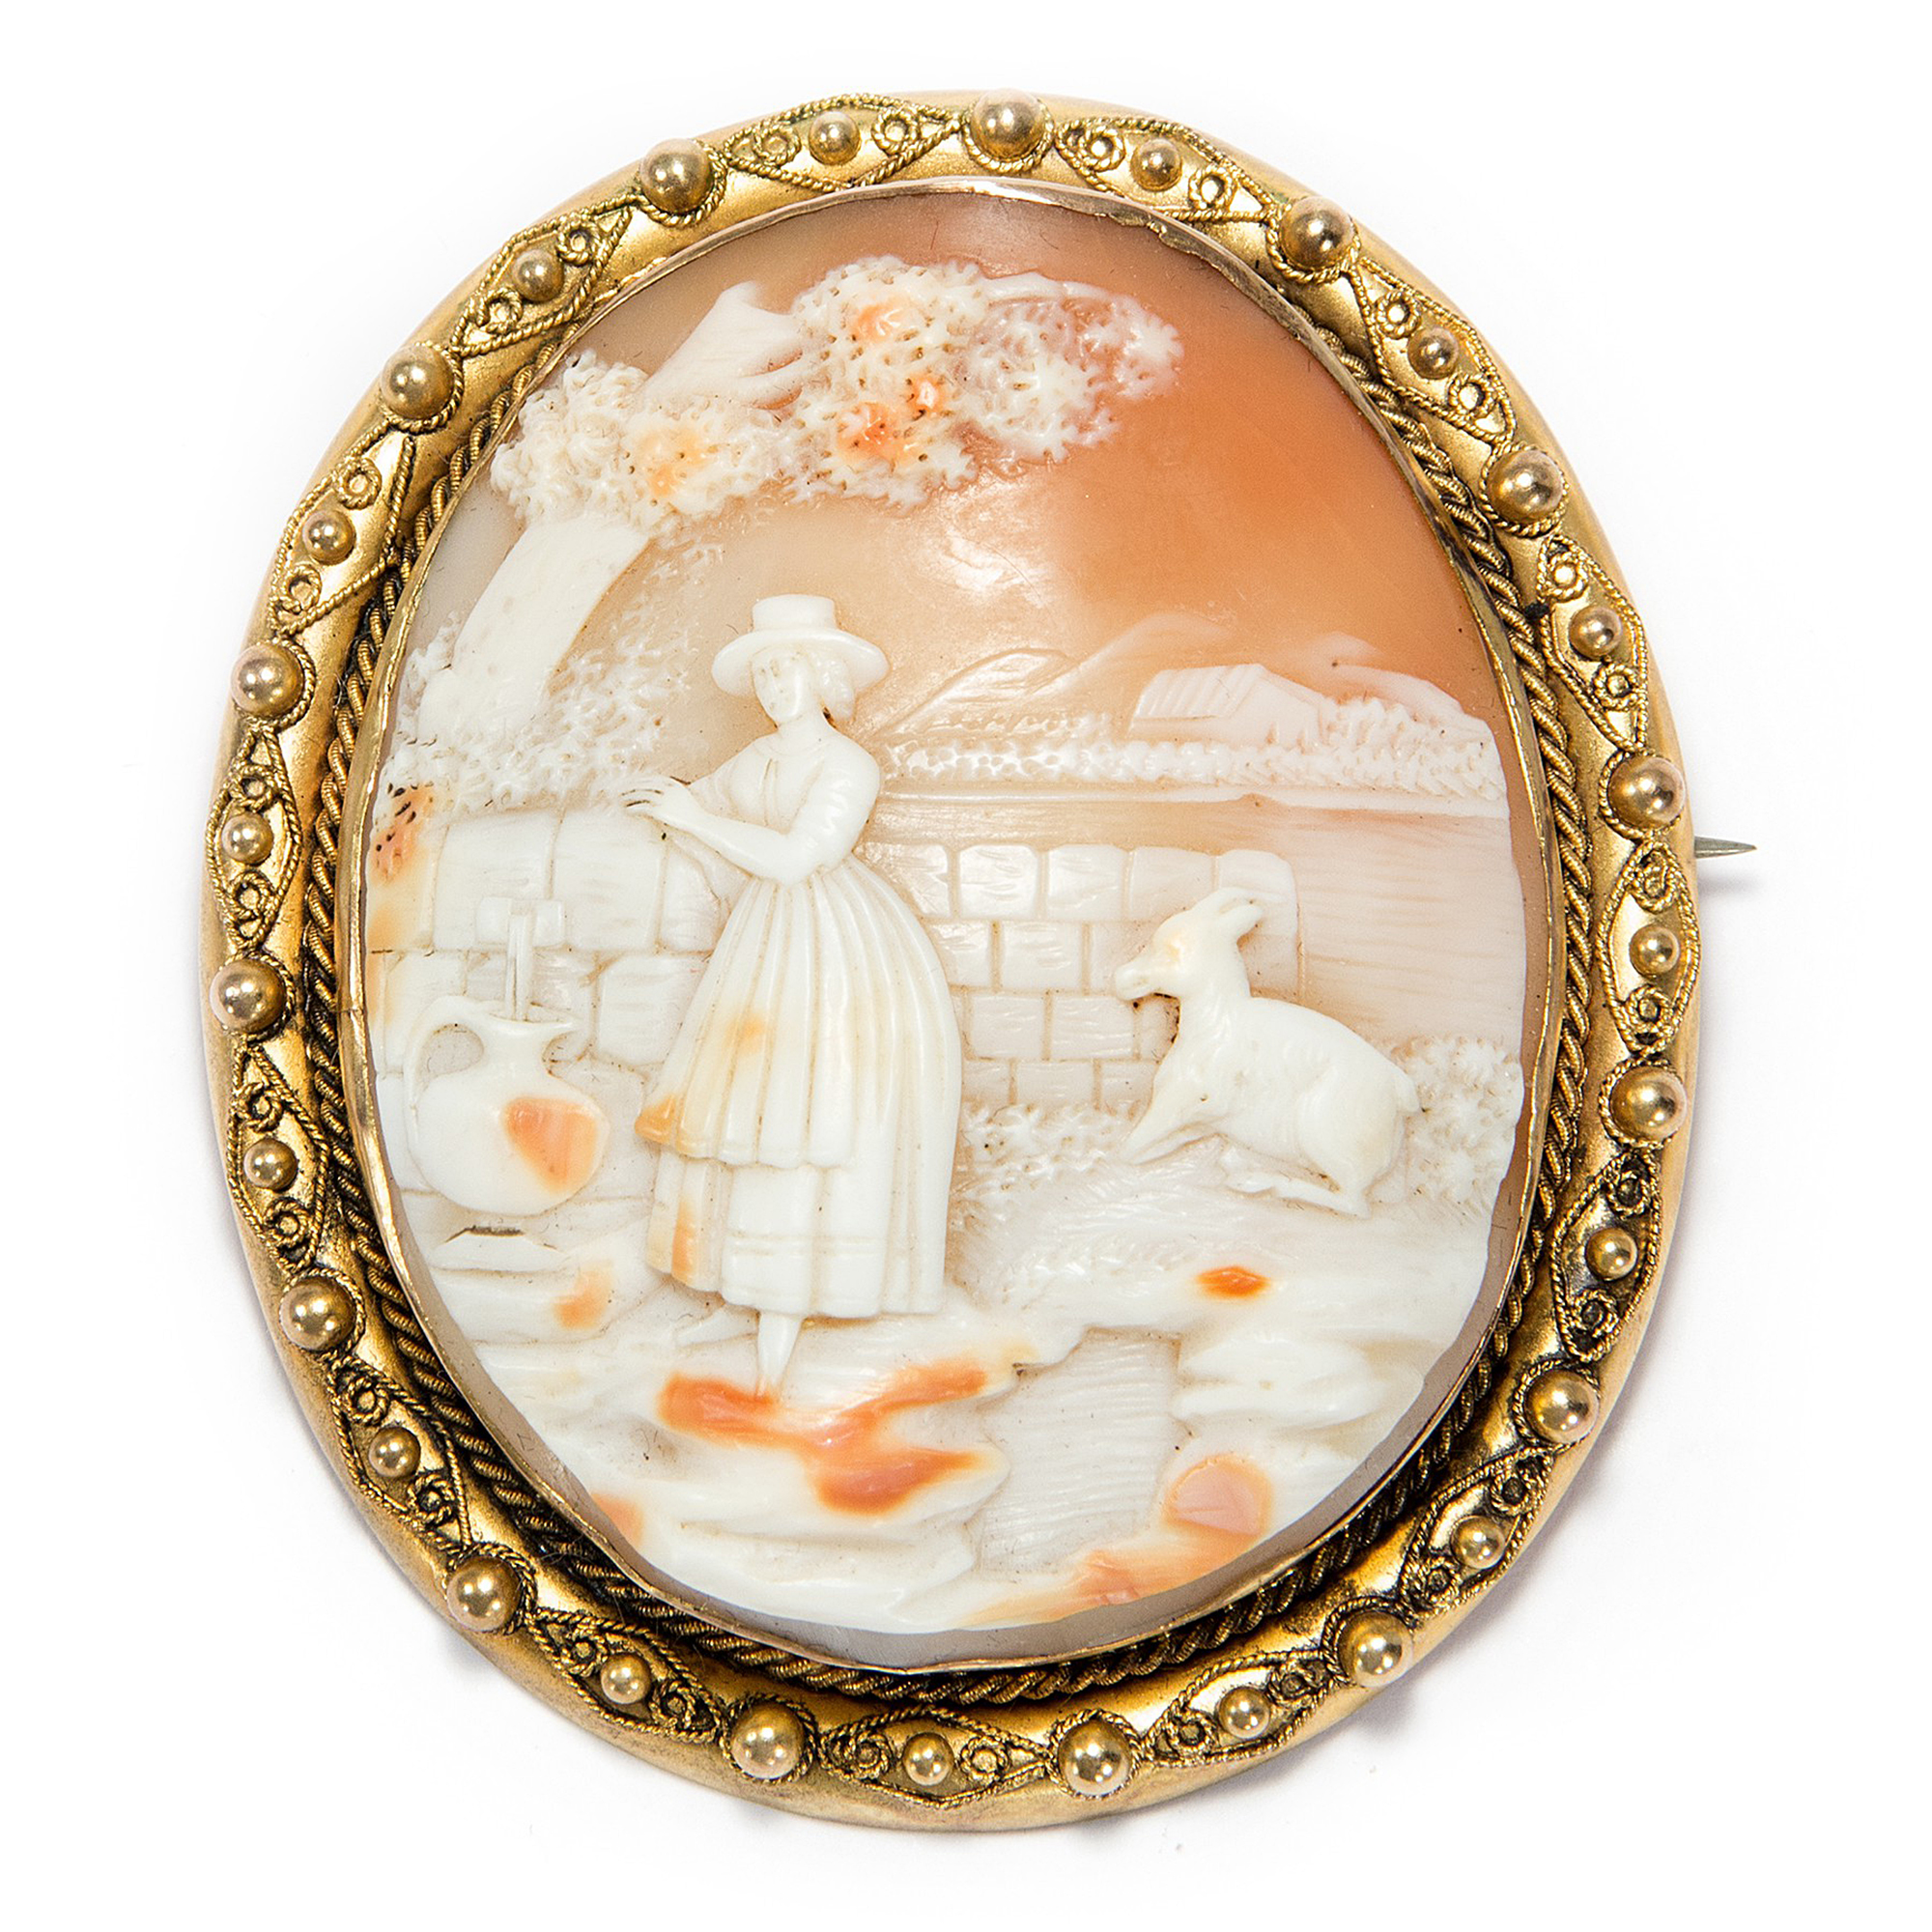 Große Muschelgemme gefasst in Gold als Brosche & Anhänger, Frankreich um 1850